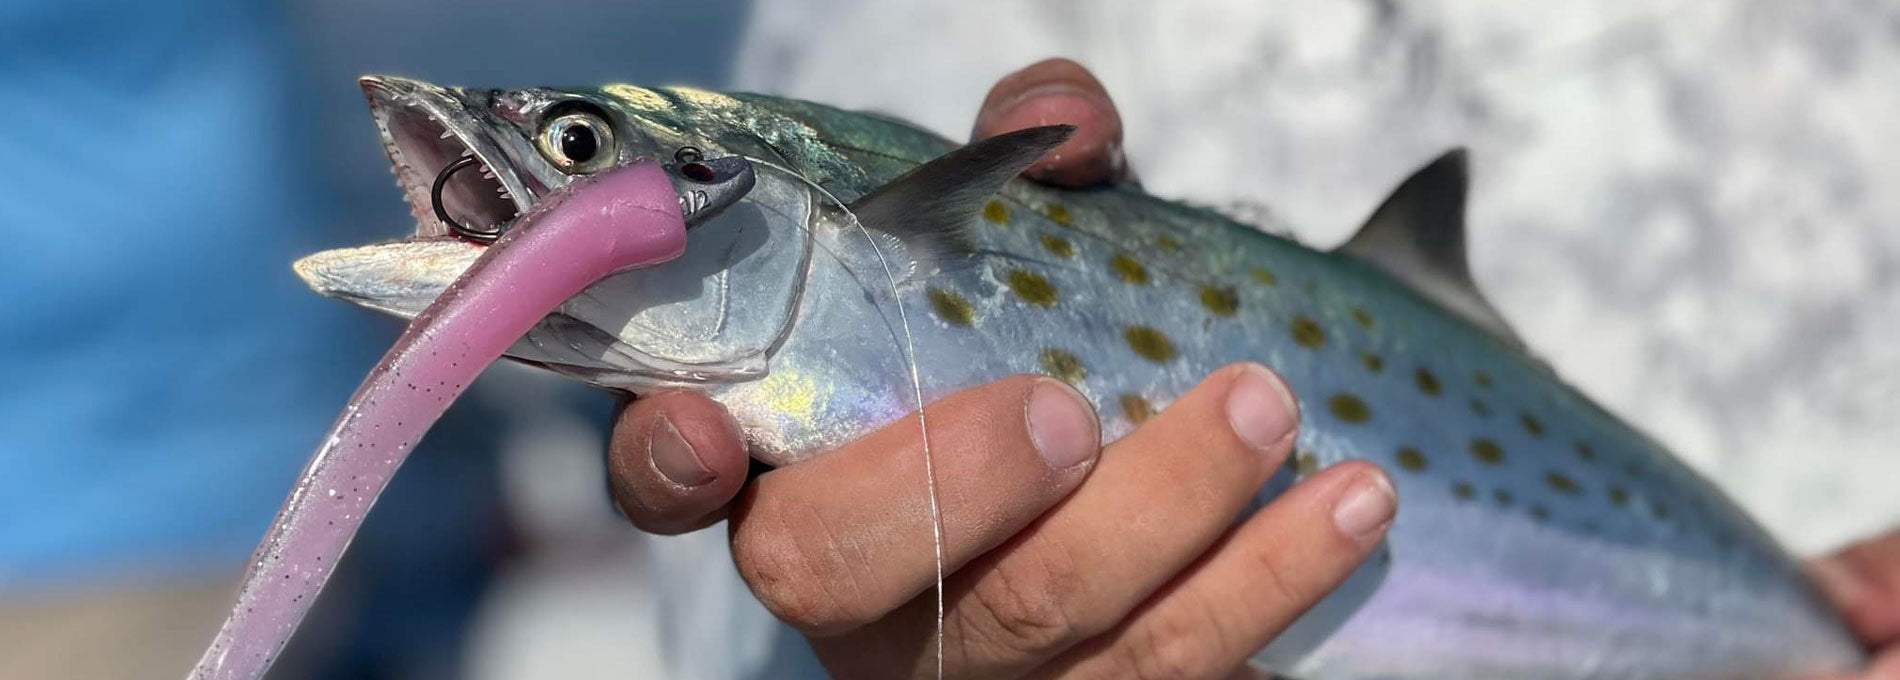 Al Gag's Custom Fishing Lures – Al Gags Fishing Lures